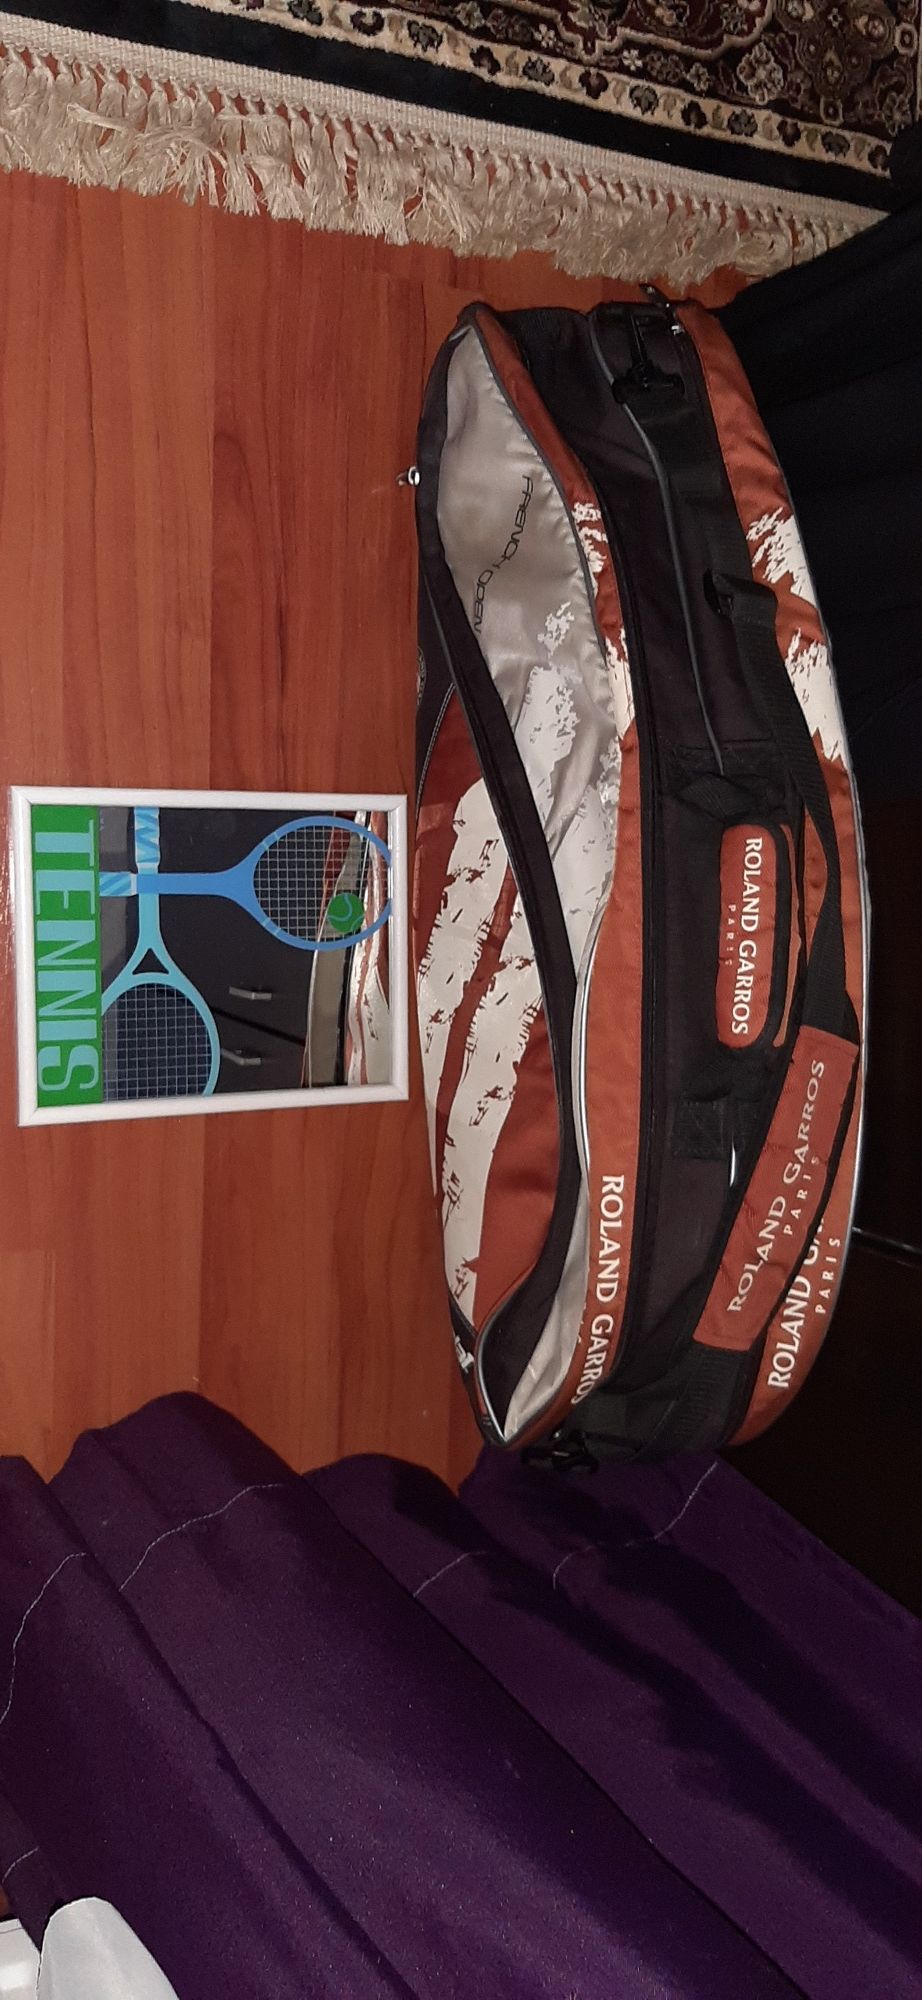 Obiecte vechi tenis geanta Babolat Roland Garros